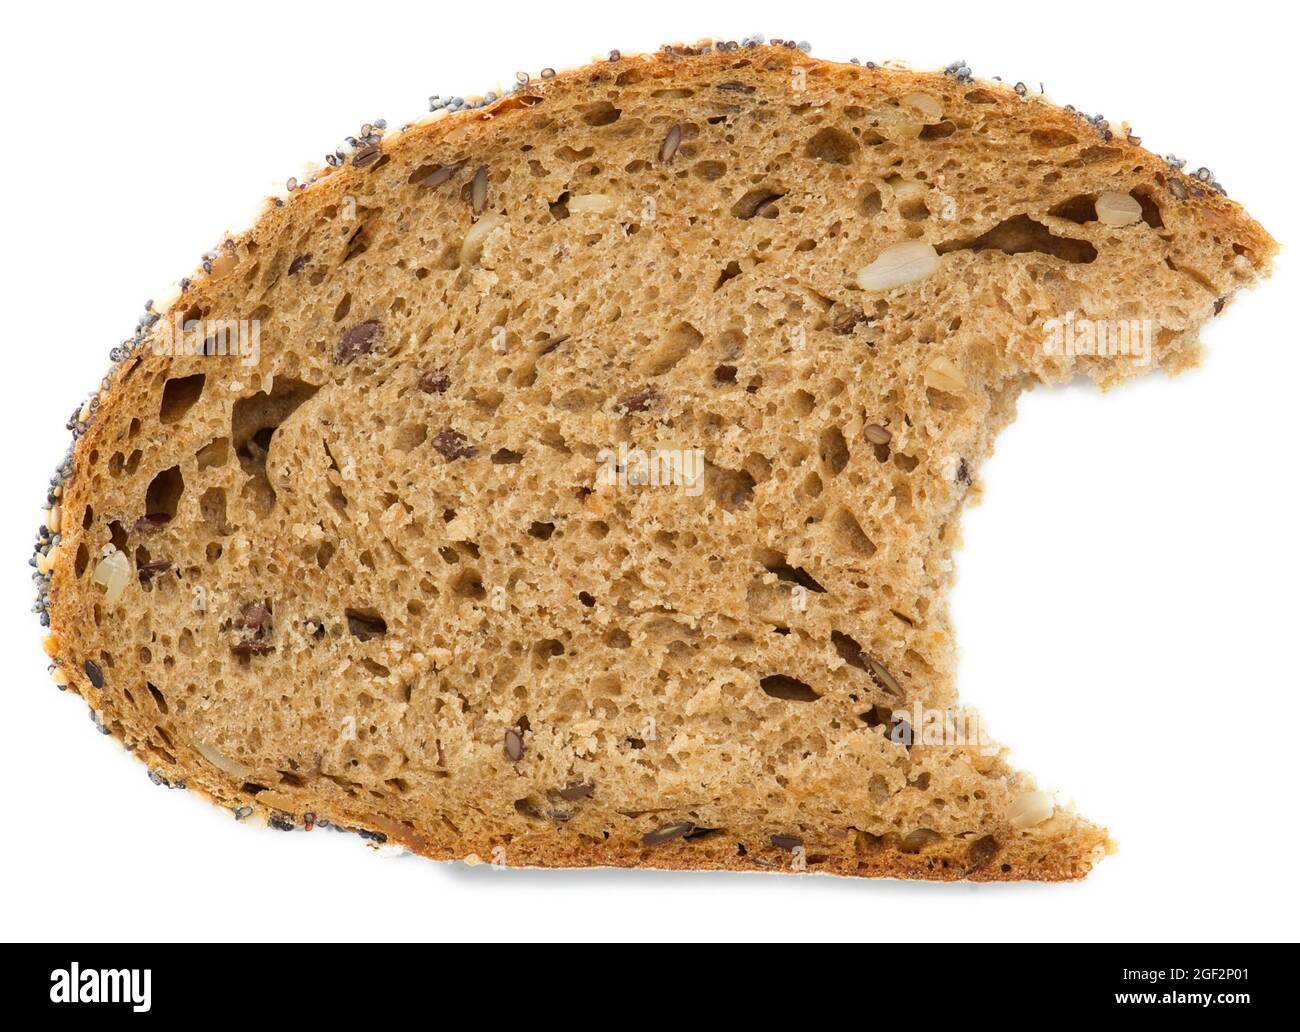 bitten into slice of whole grain bread Stock Photo